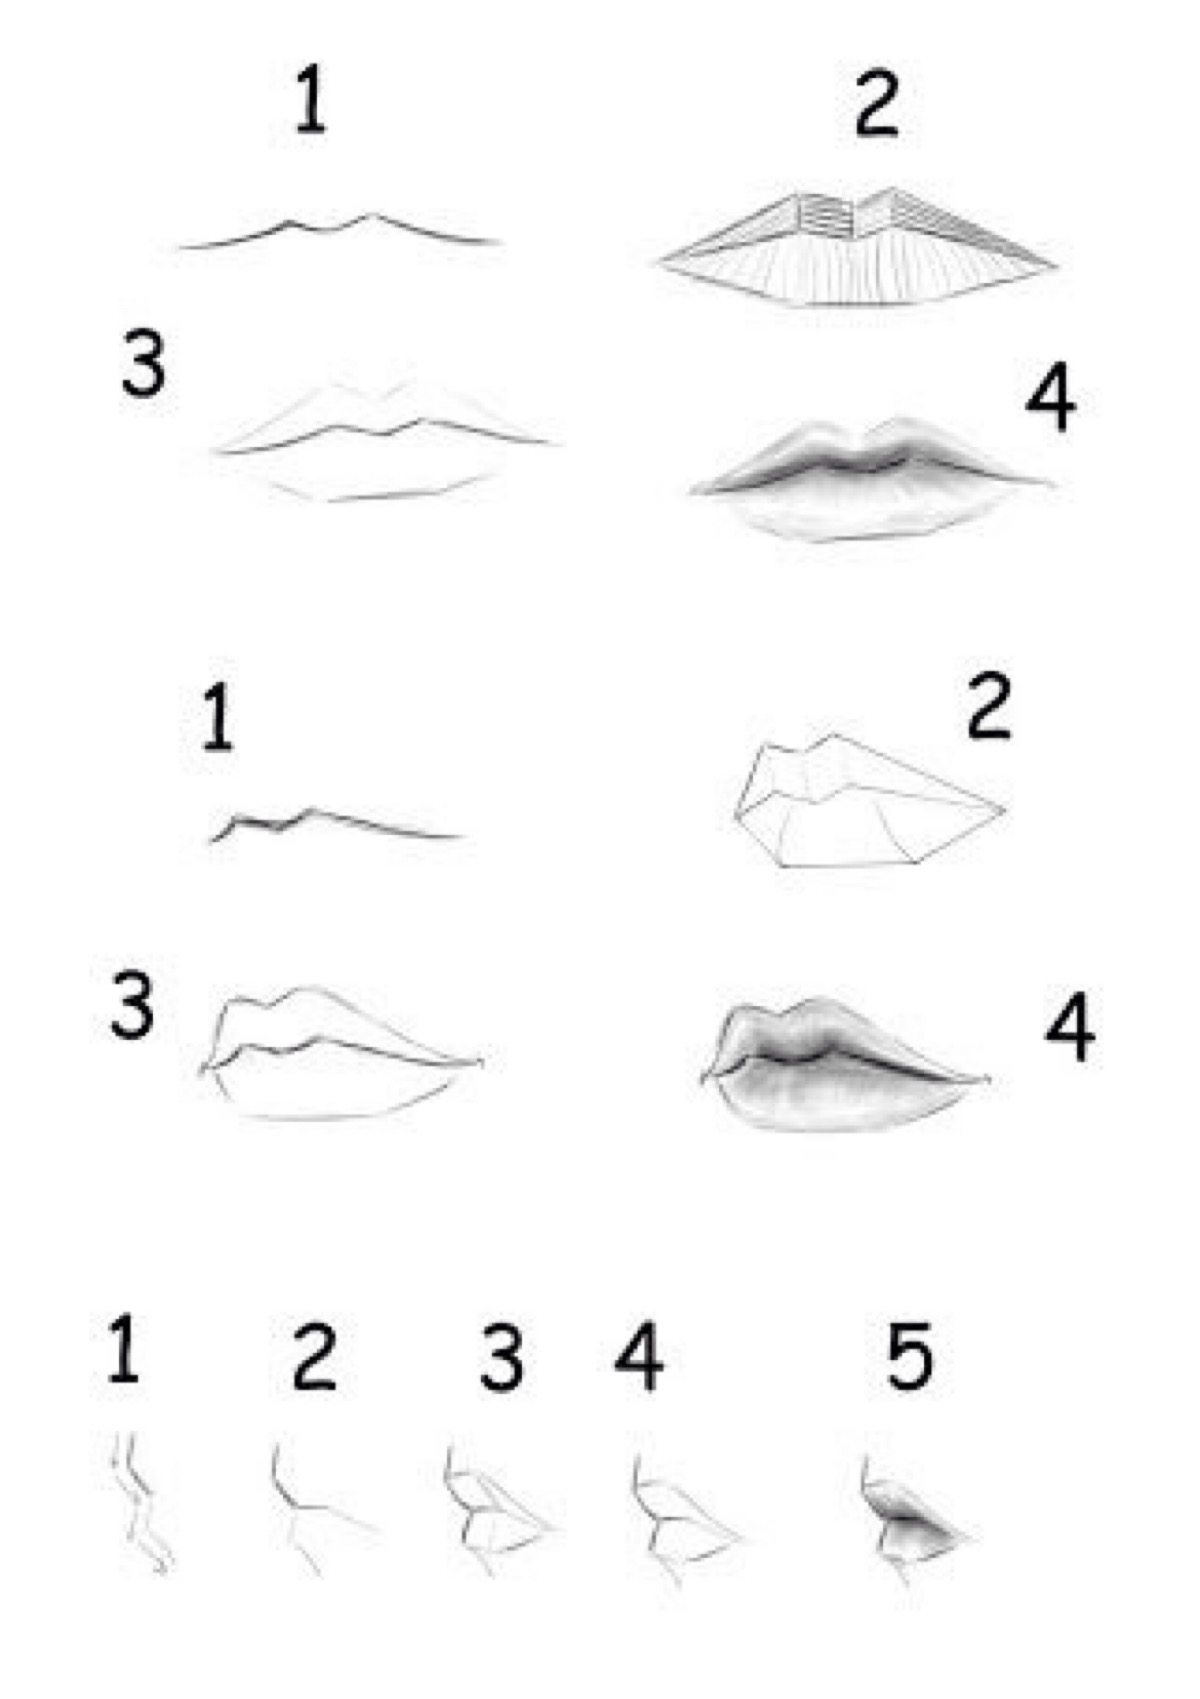 关于唇的讲解和画法图片